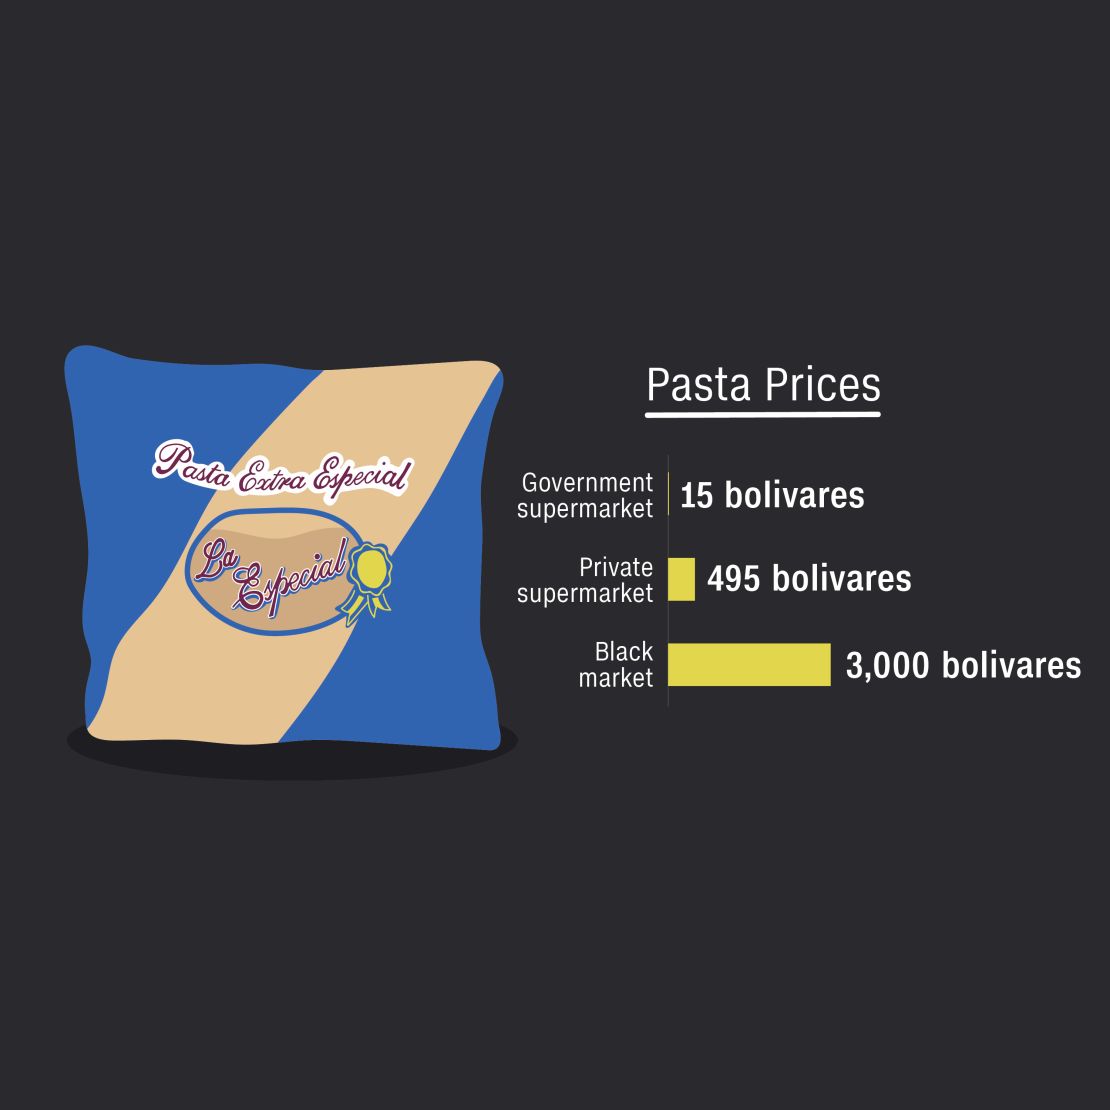 venezuelan food crisis pasta